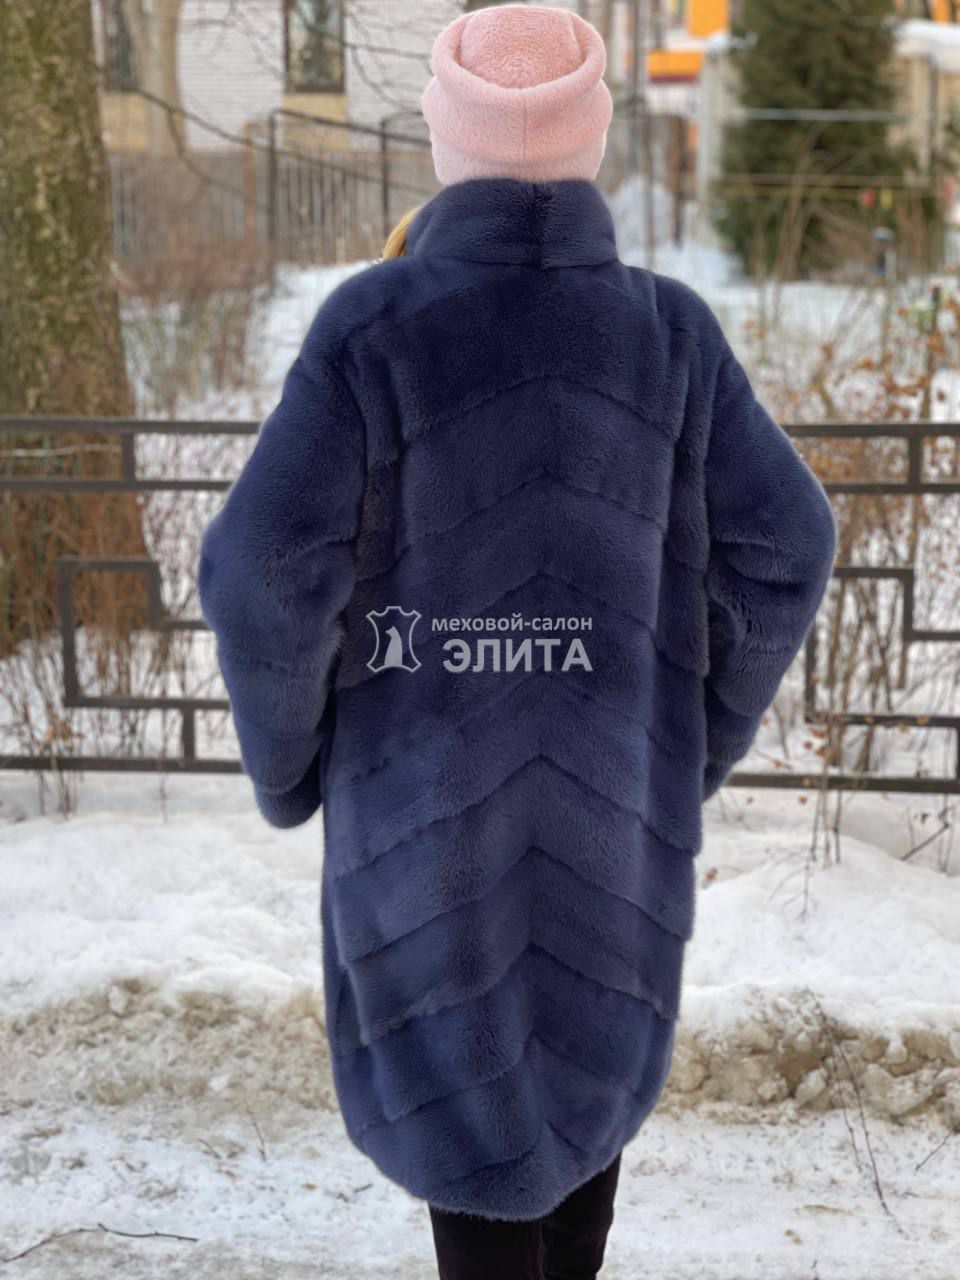 Пальто из норки Мелисса р-р 46-52, цена 188200 рублей в интернет-магазине кожи и меха ЭЛИТА. Вид 2